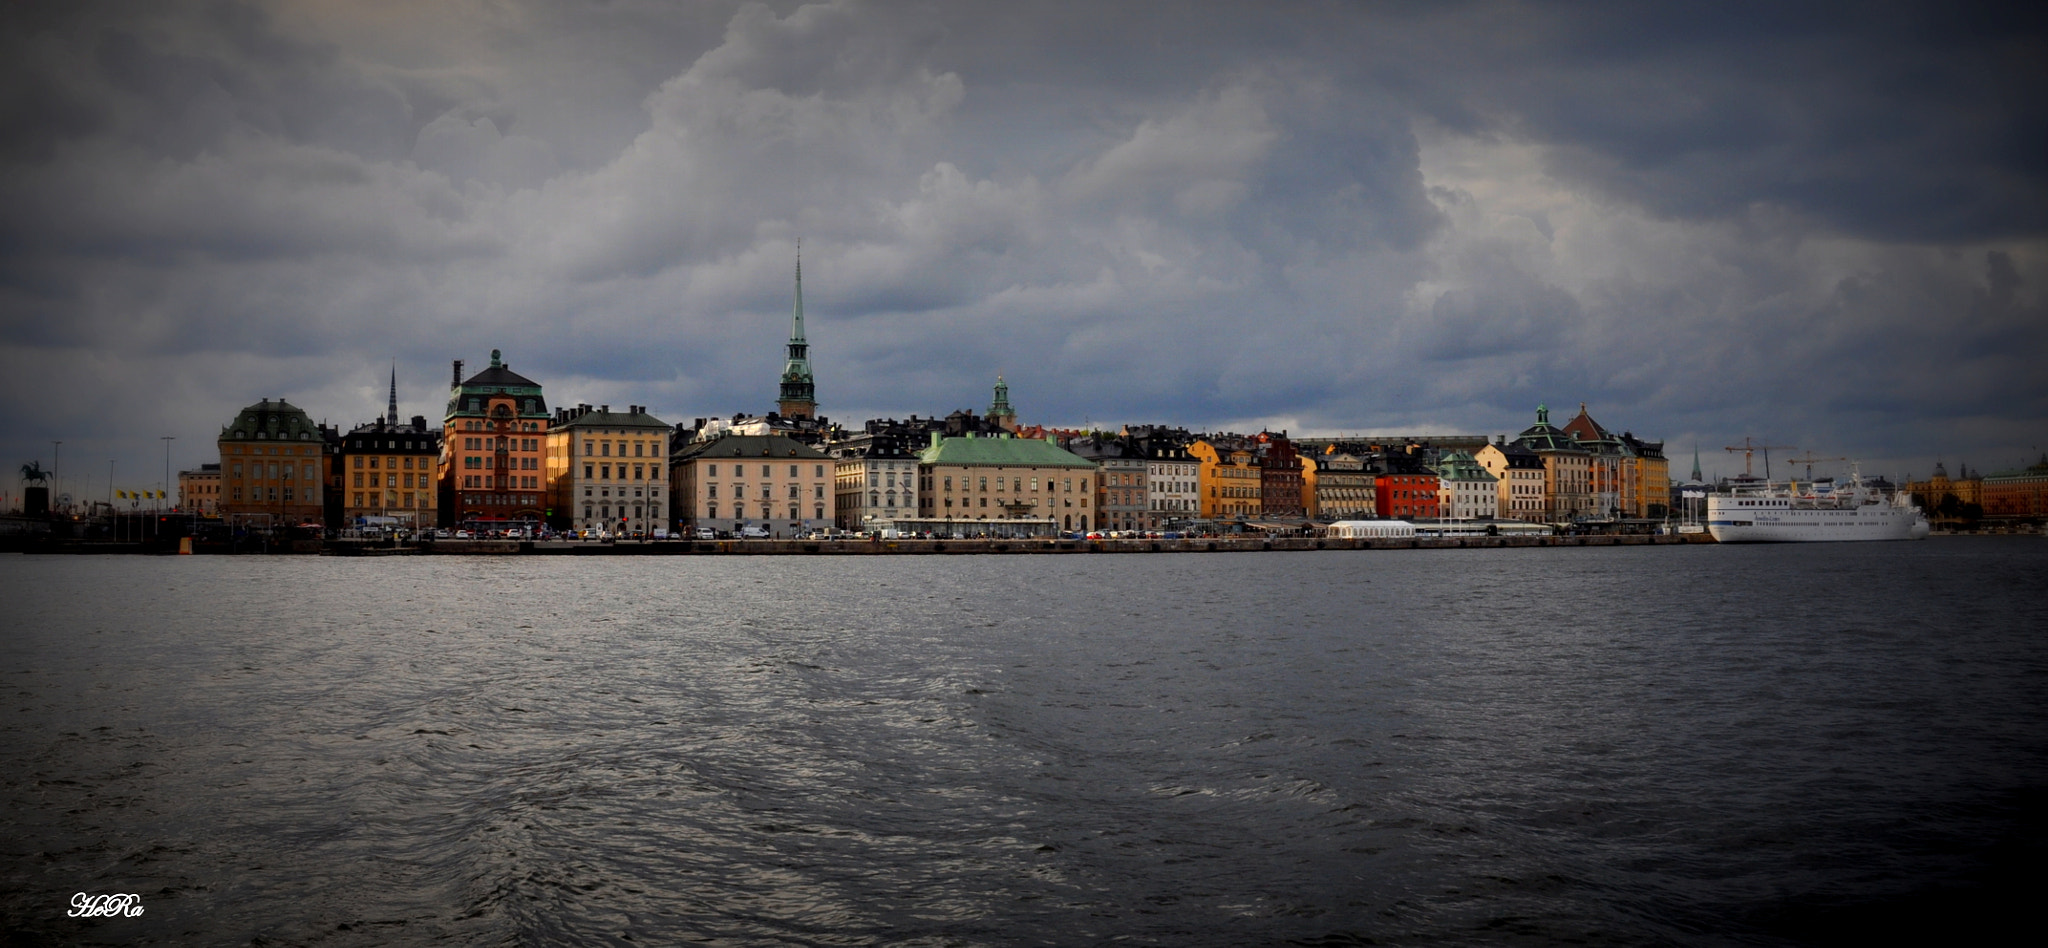 Nikon D90 + Nikon AF-S DX Nikkor 18-70mm F3.5-4.5G ED-IF sample photo. Stockholm city from a boattrip photography